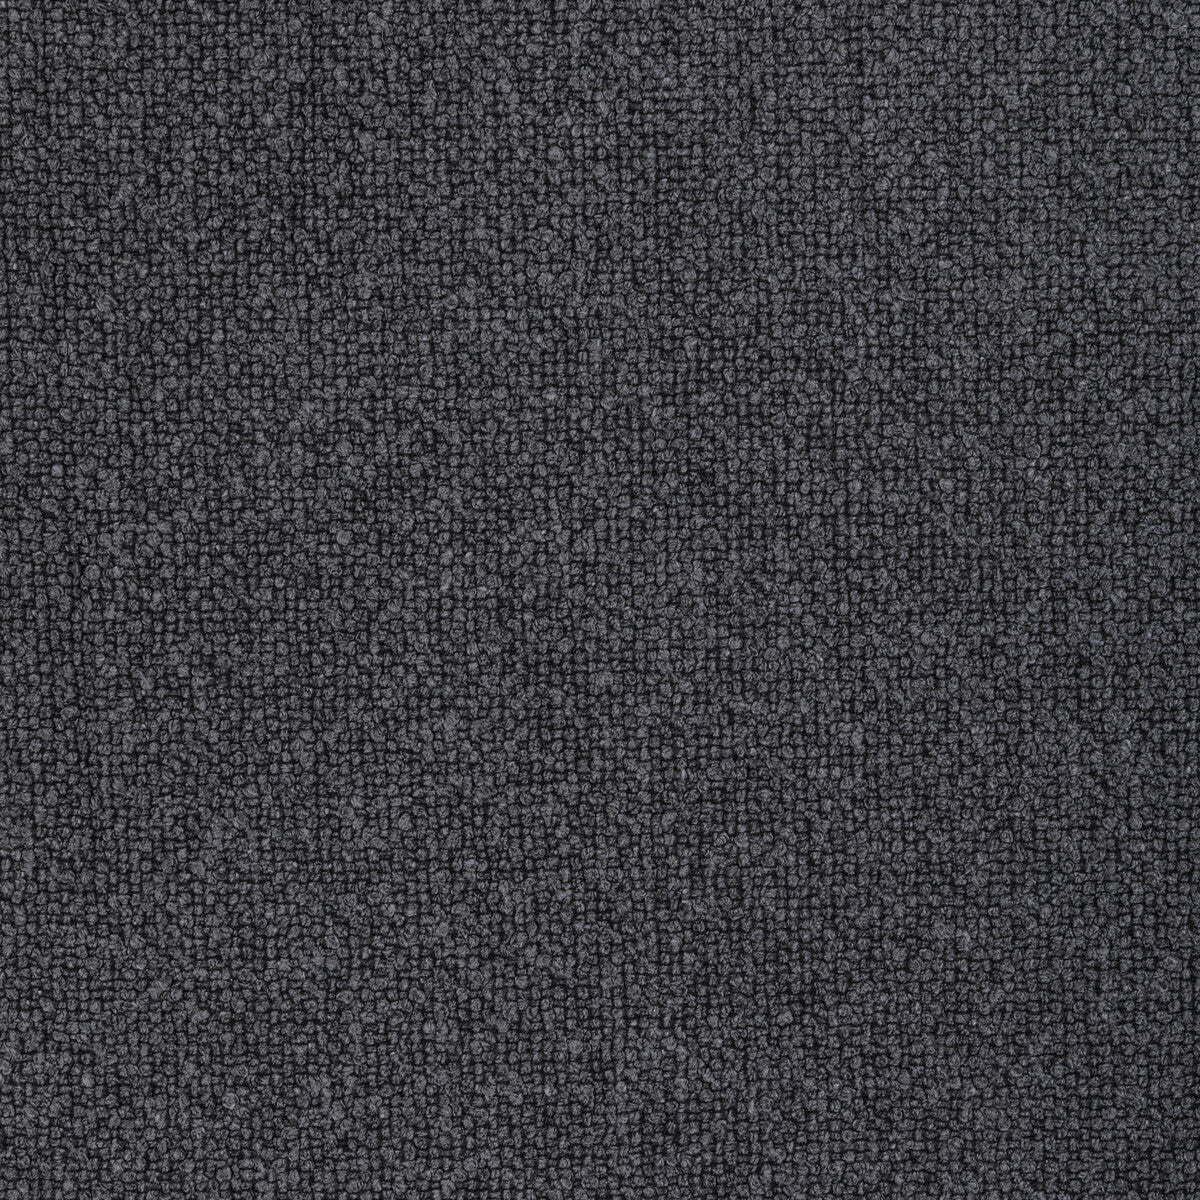 Kravet Design fabric in 4923-2121 color - pattern 4923.2121.0 - by Kravet Design